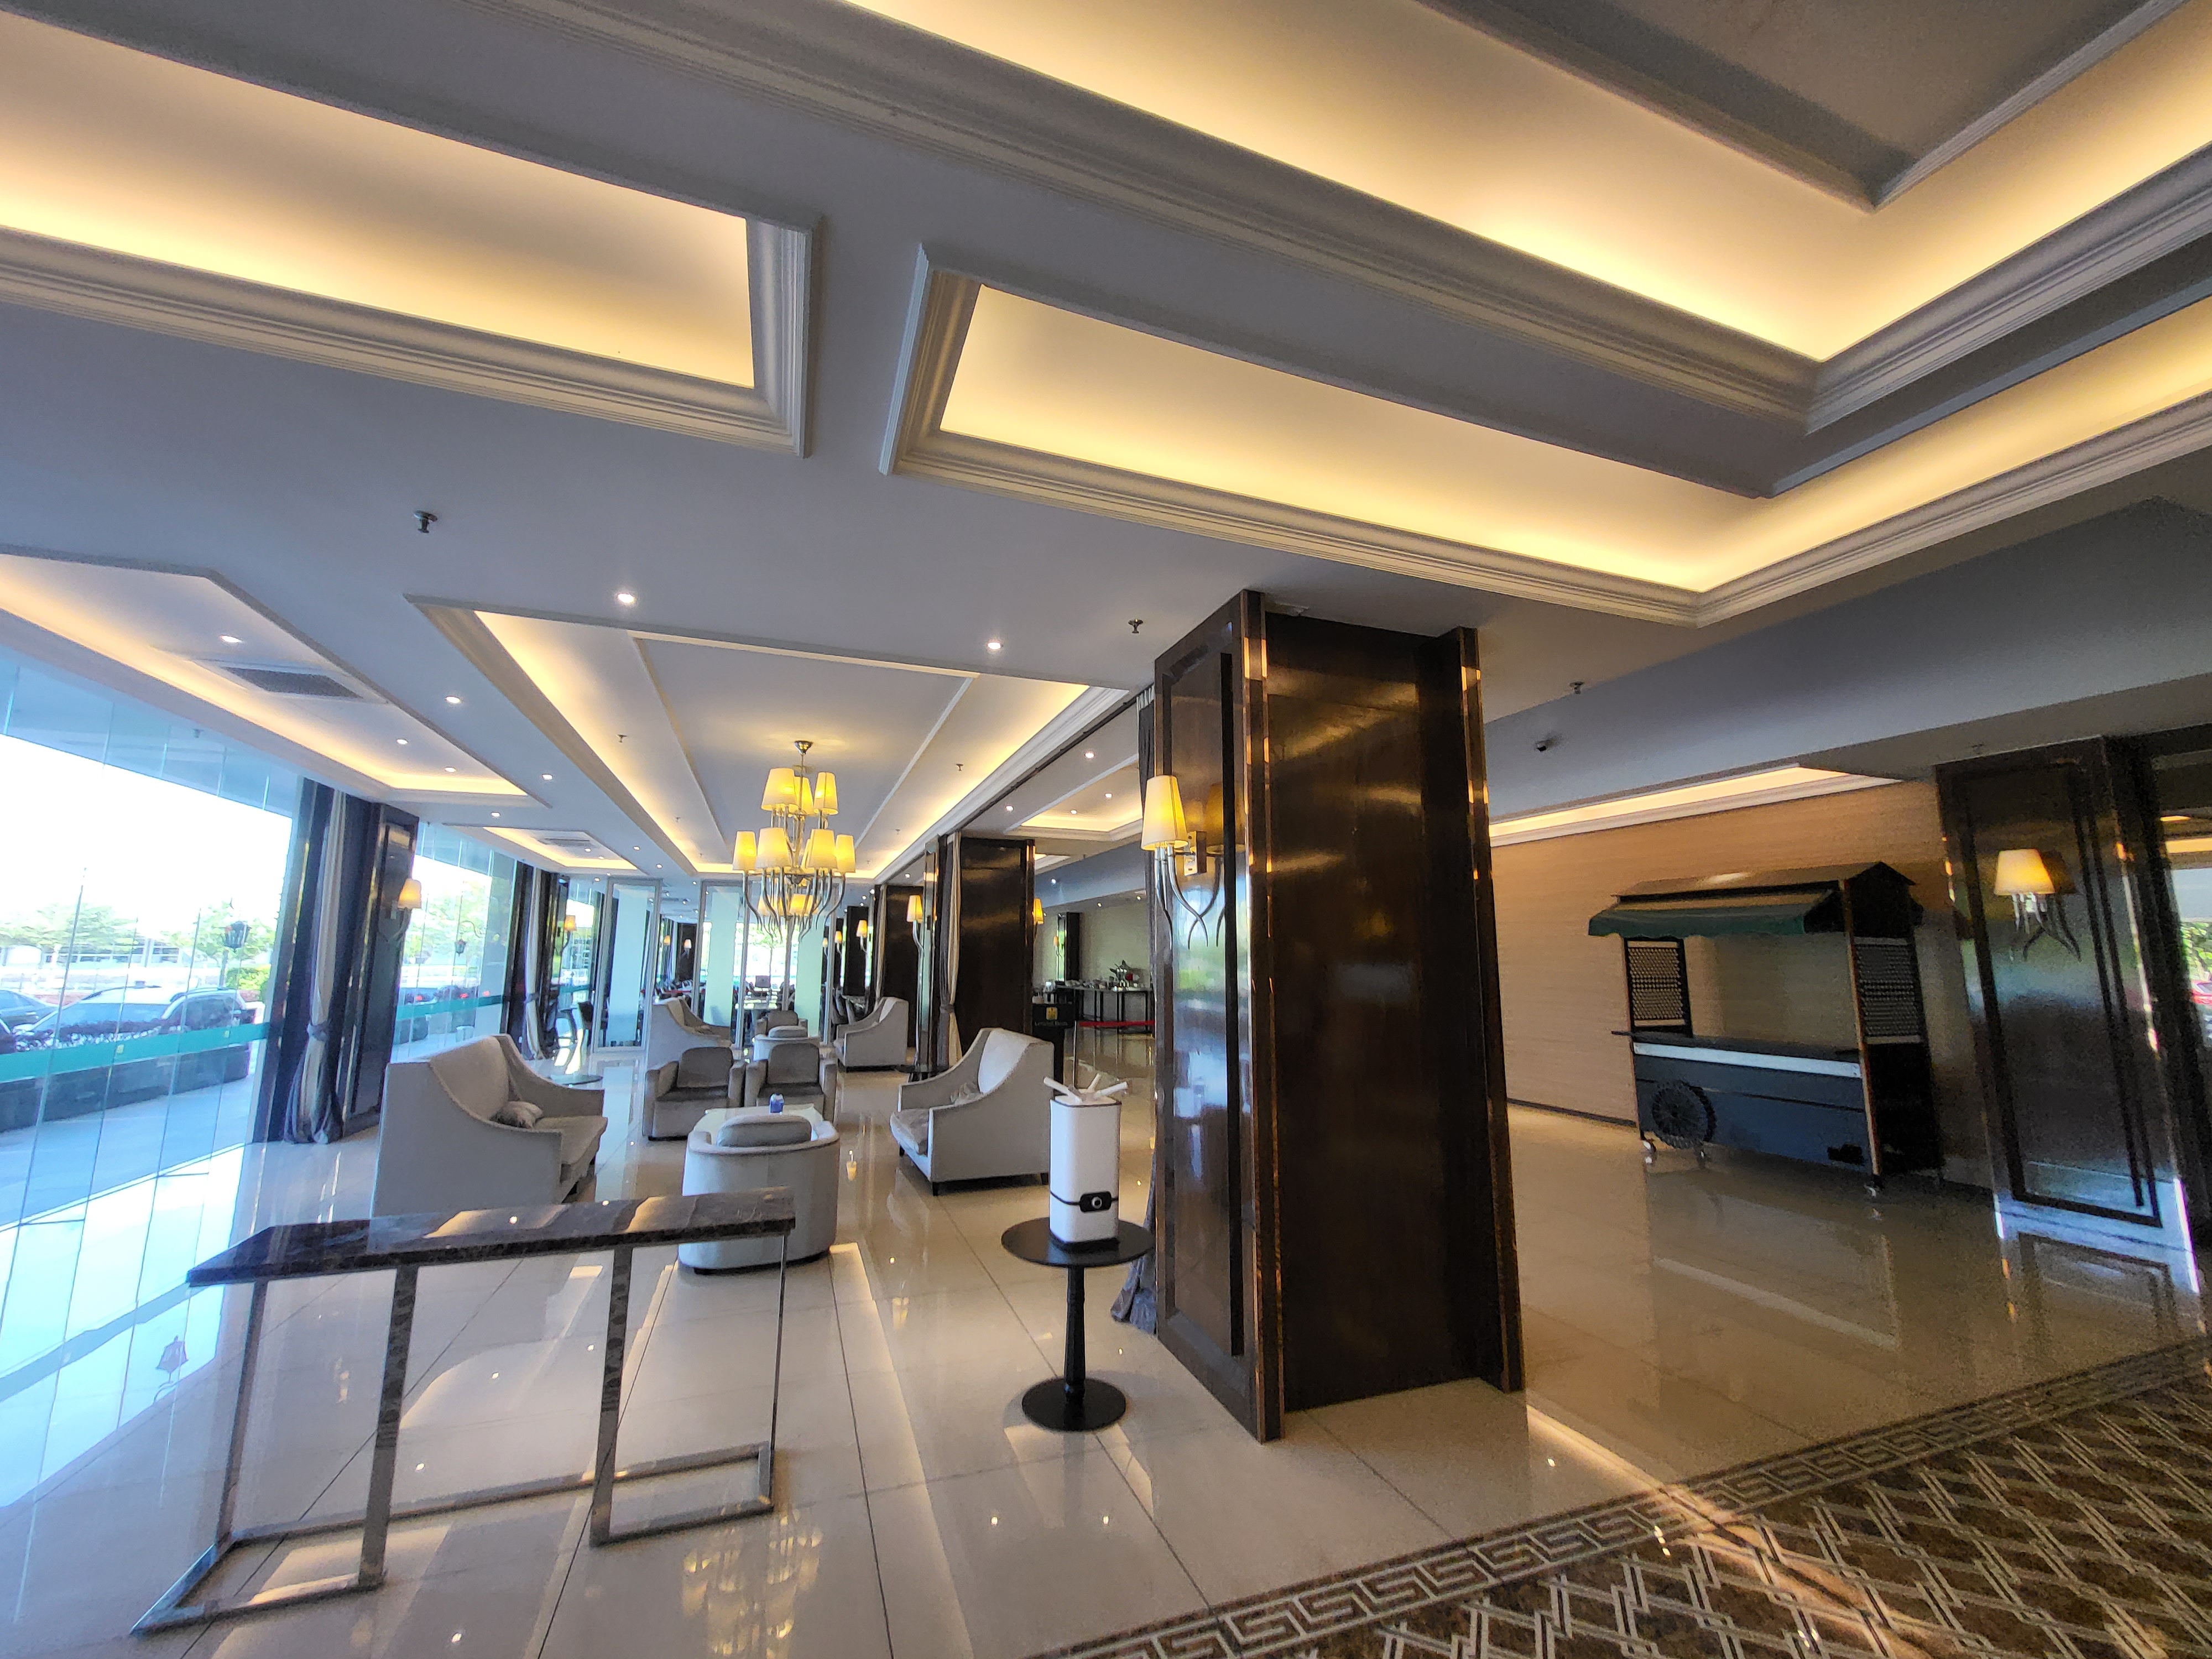 [쿠알라룸푸르] 르베뉴(Le'venue Hotel)호텔(4성급) 스타필드(27홀)골프장(VIP)